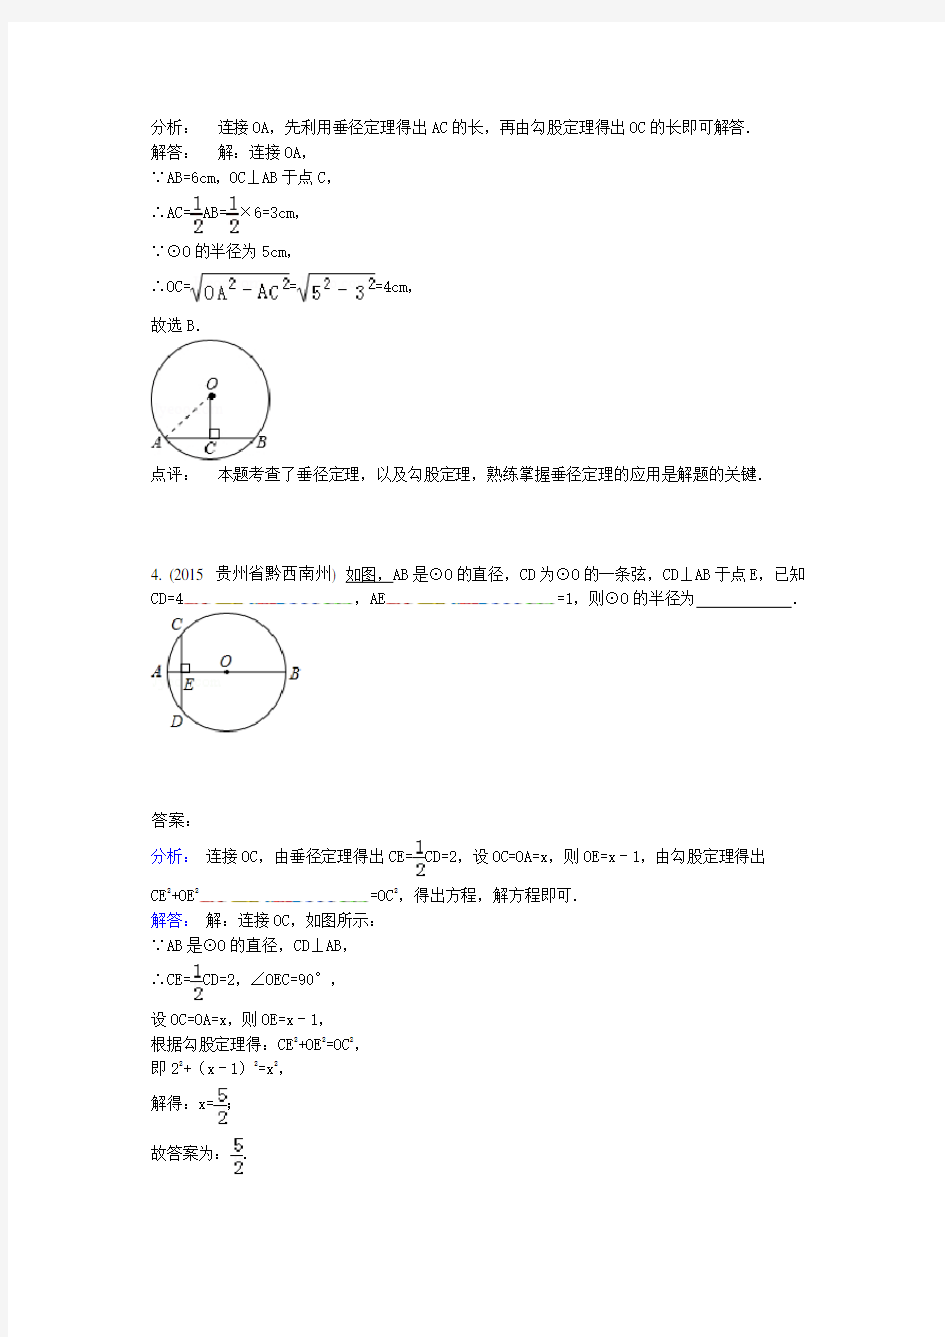 4.2垂径定理及推论(2015年)